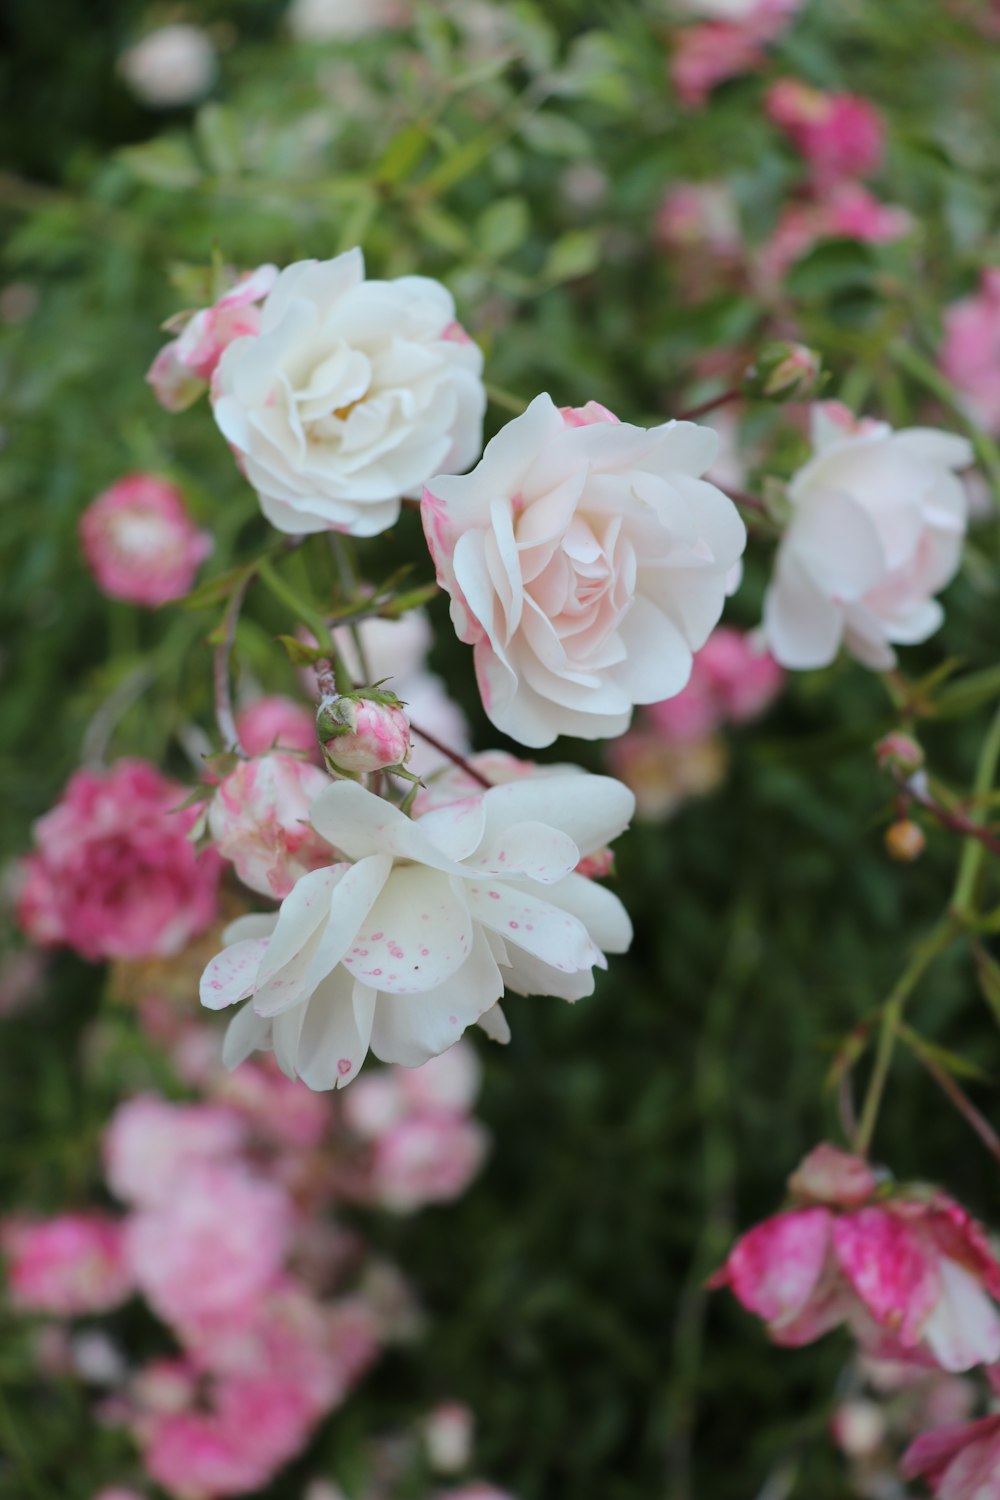 white and pink flowers in tilt shift lens